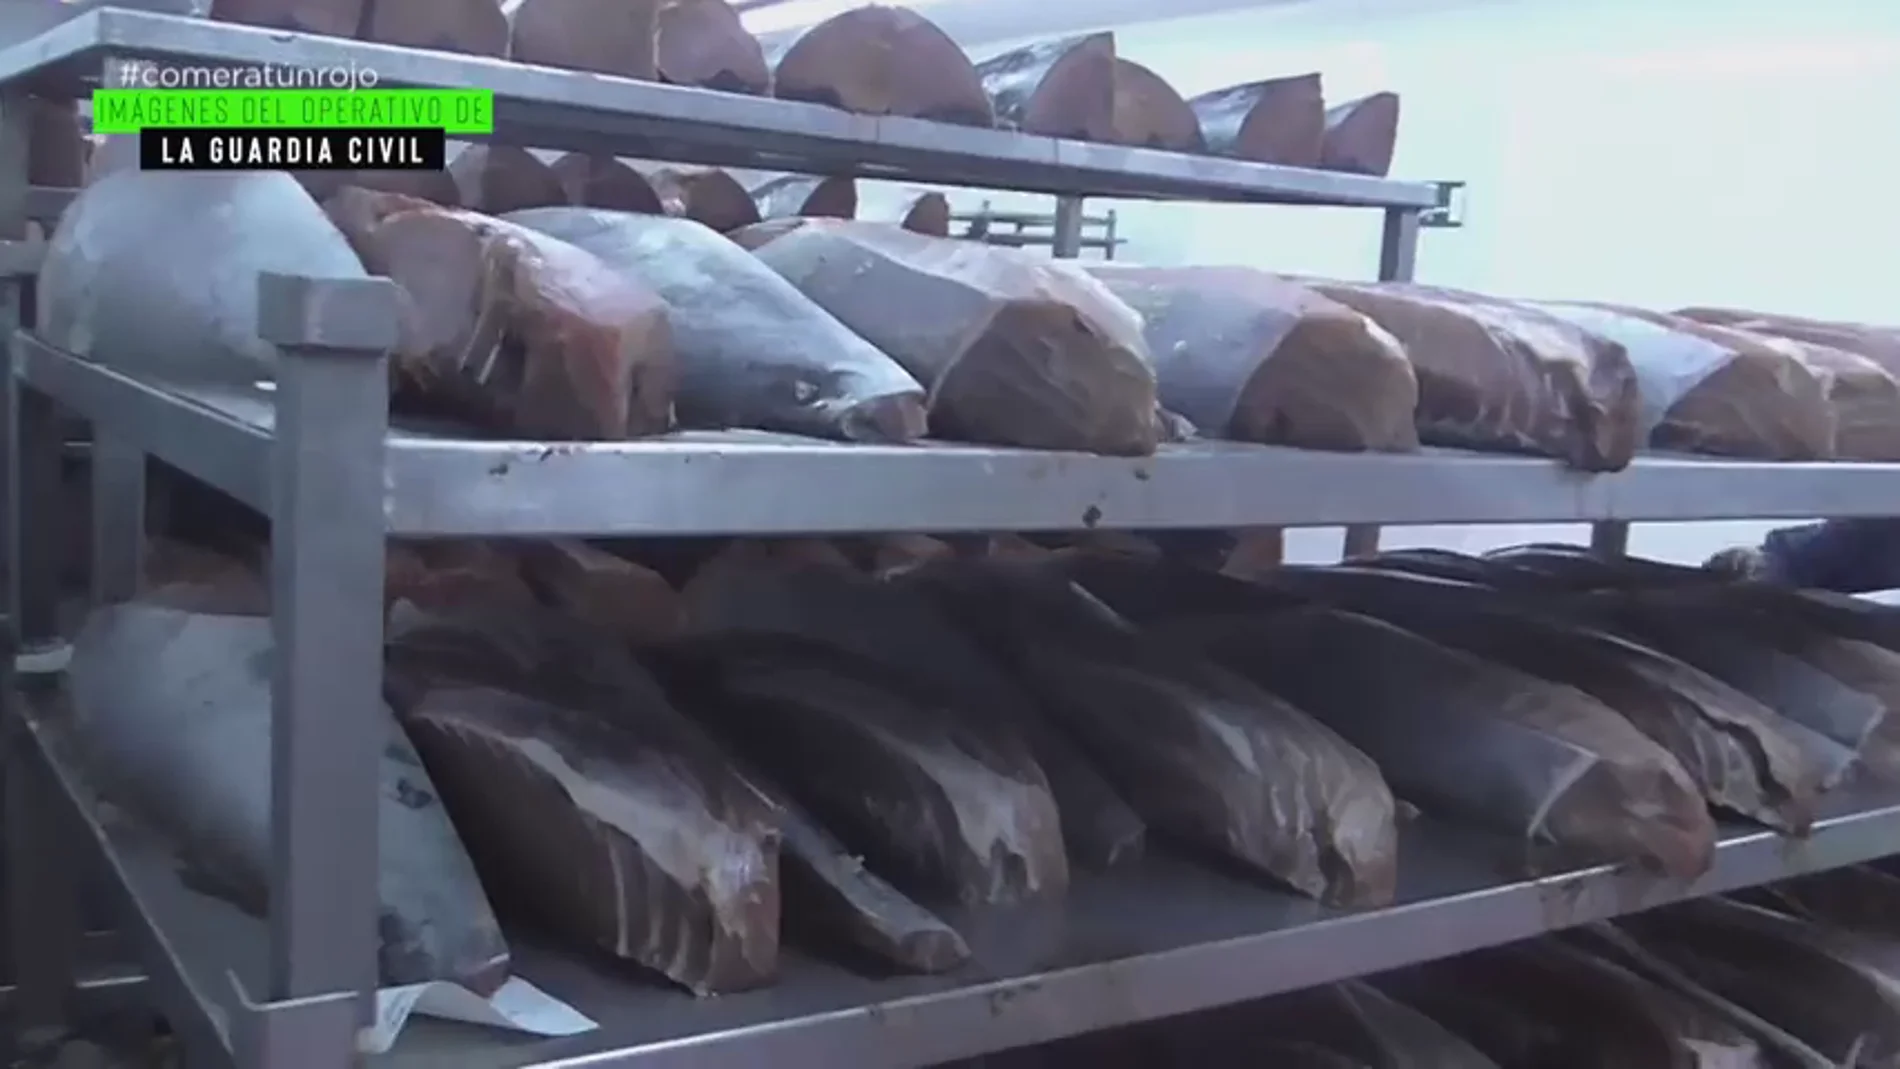 "El 50% de lo que distribuye es ilegal": la cruda realidad que rodea a uno de los mayores productores ‘legales’ de atún rojo a nivel mundial